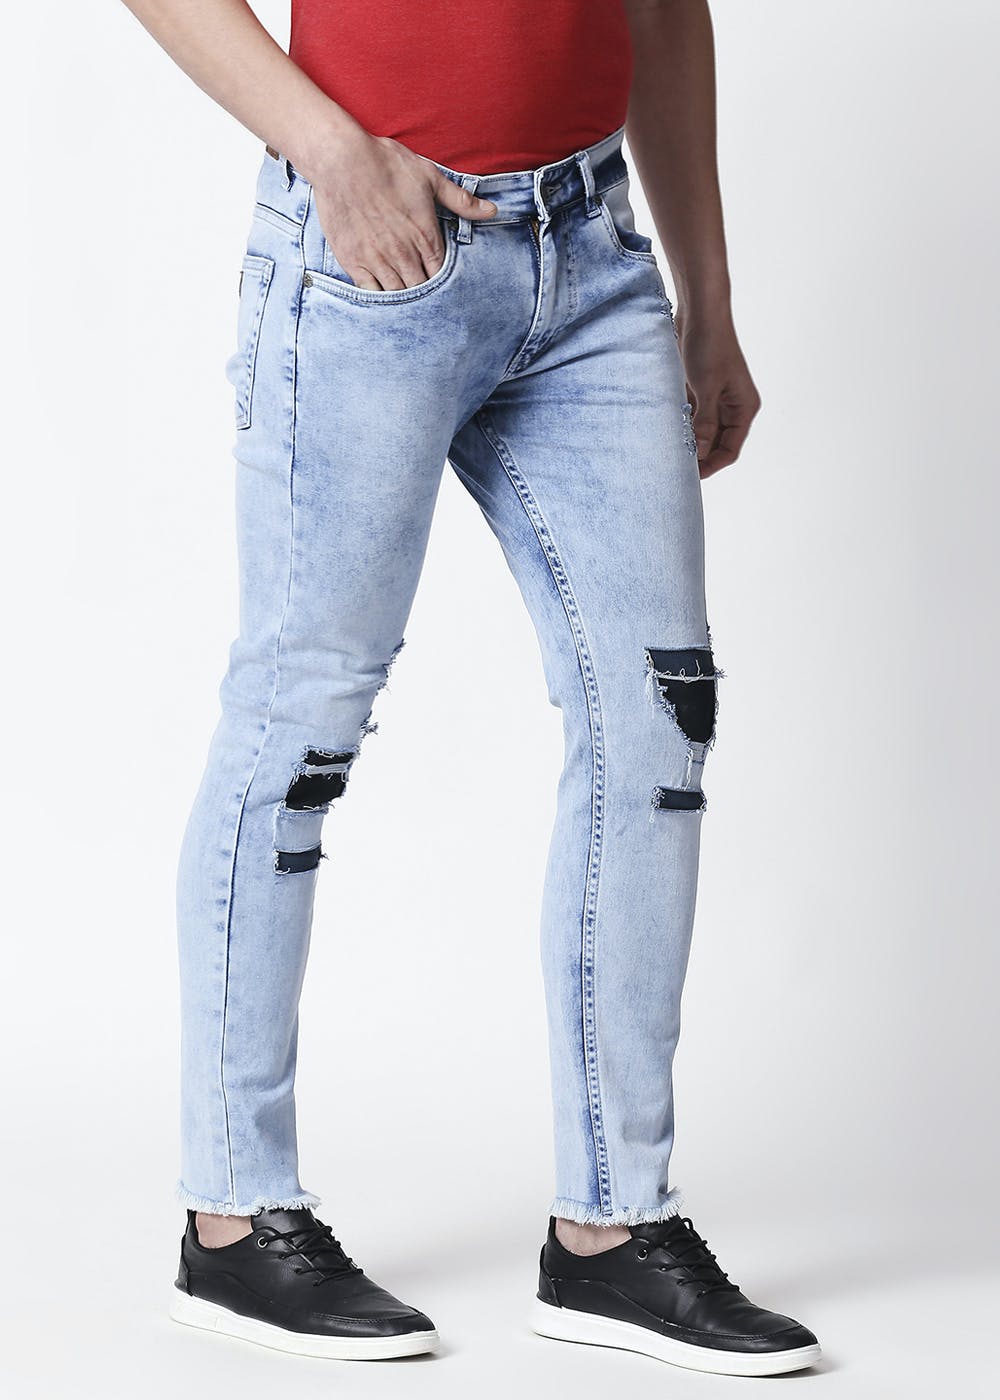 new fashion men skinny cargo jeans long pant denim India  Ubuy